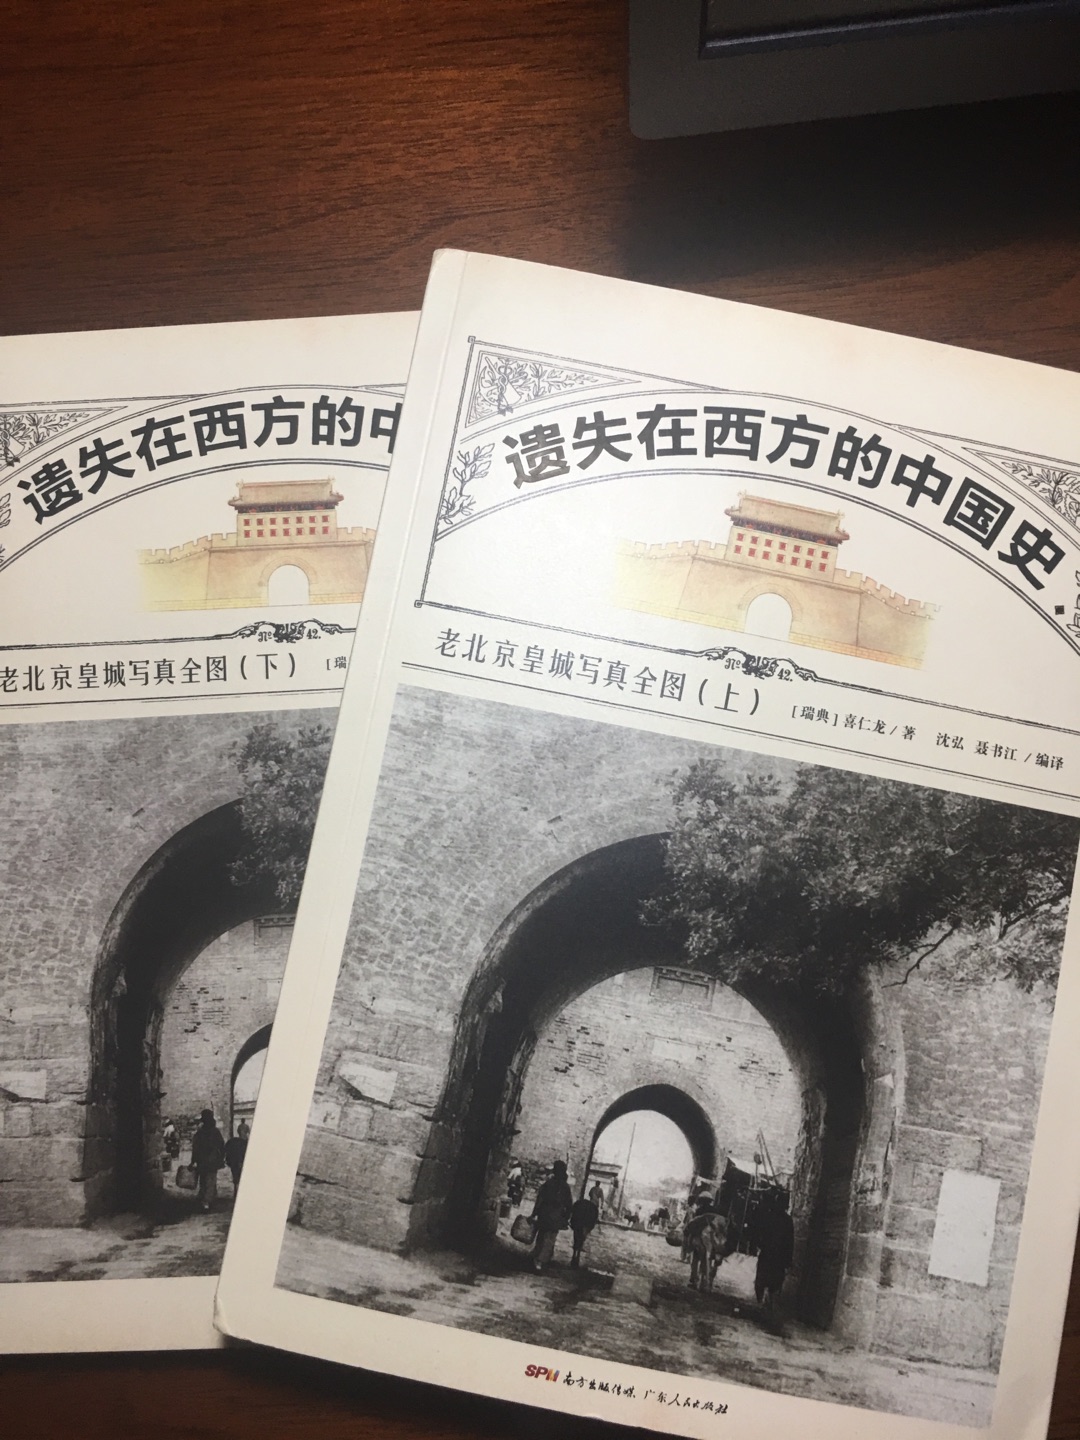 16开本，很多北京的老照片，印刷也还清晰，值得收藏！